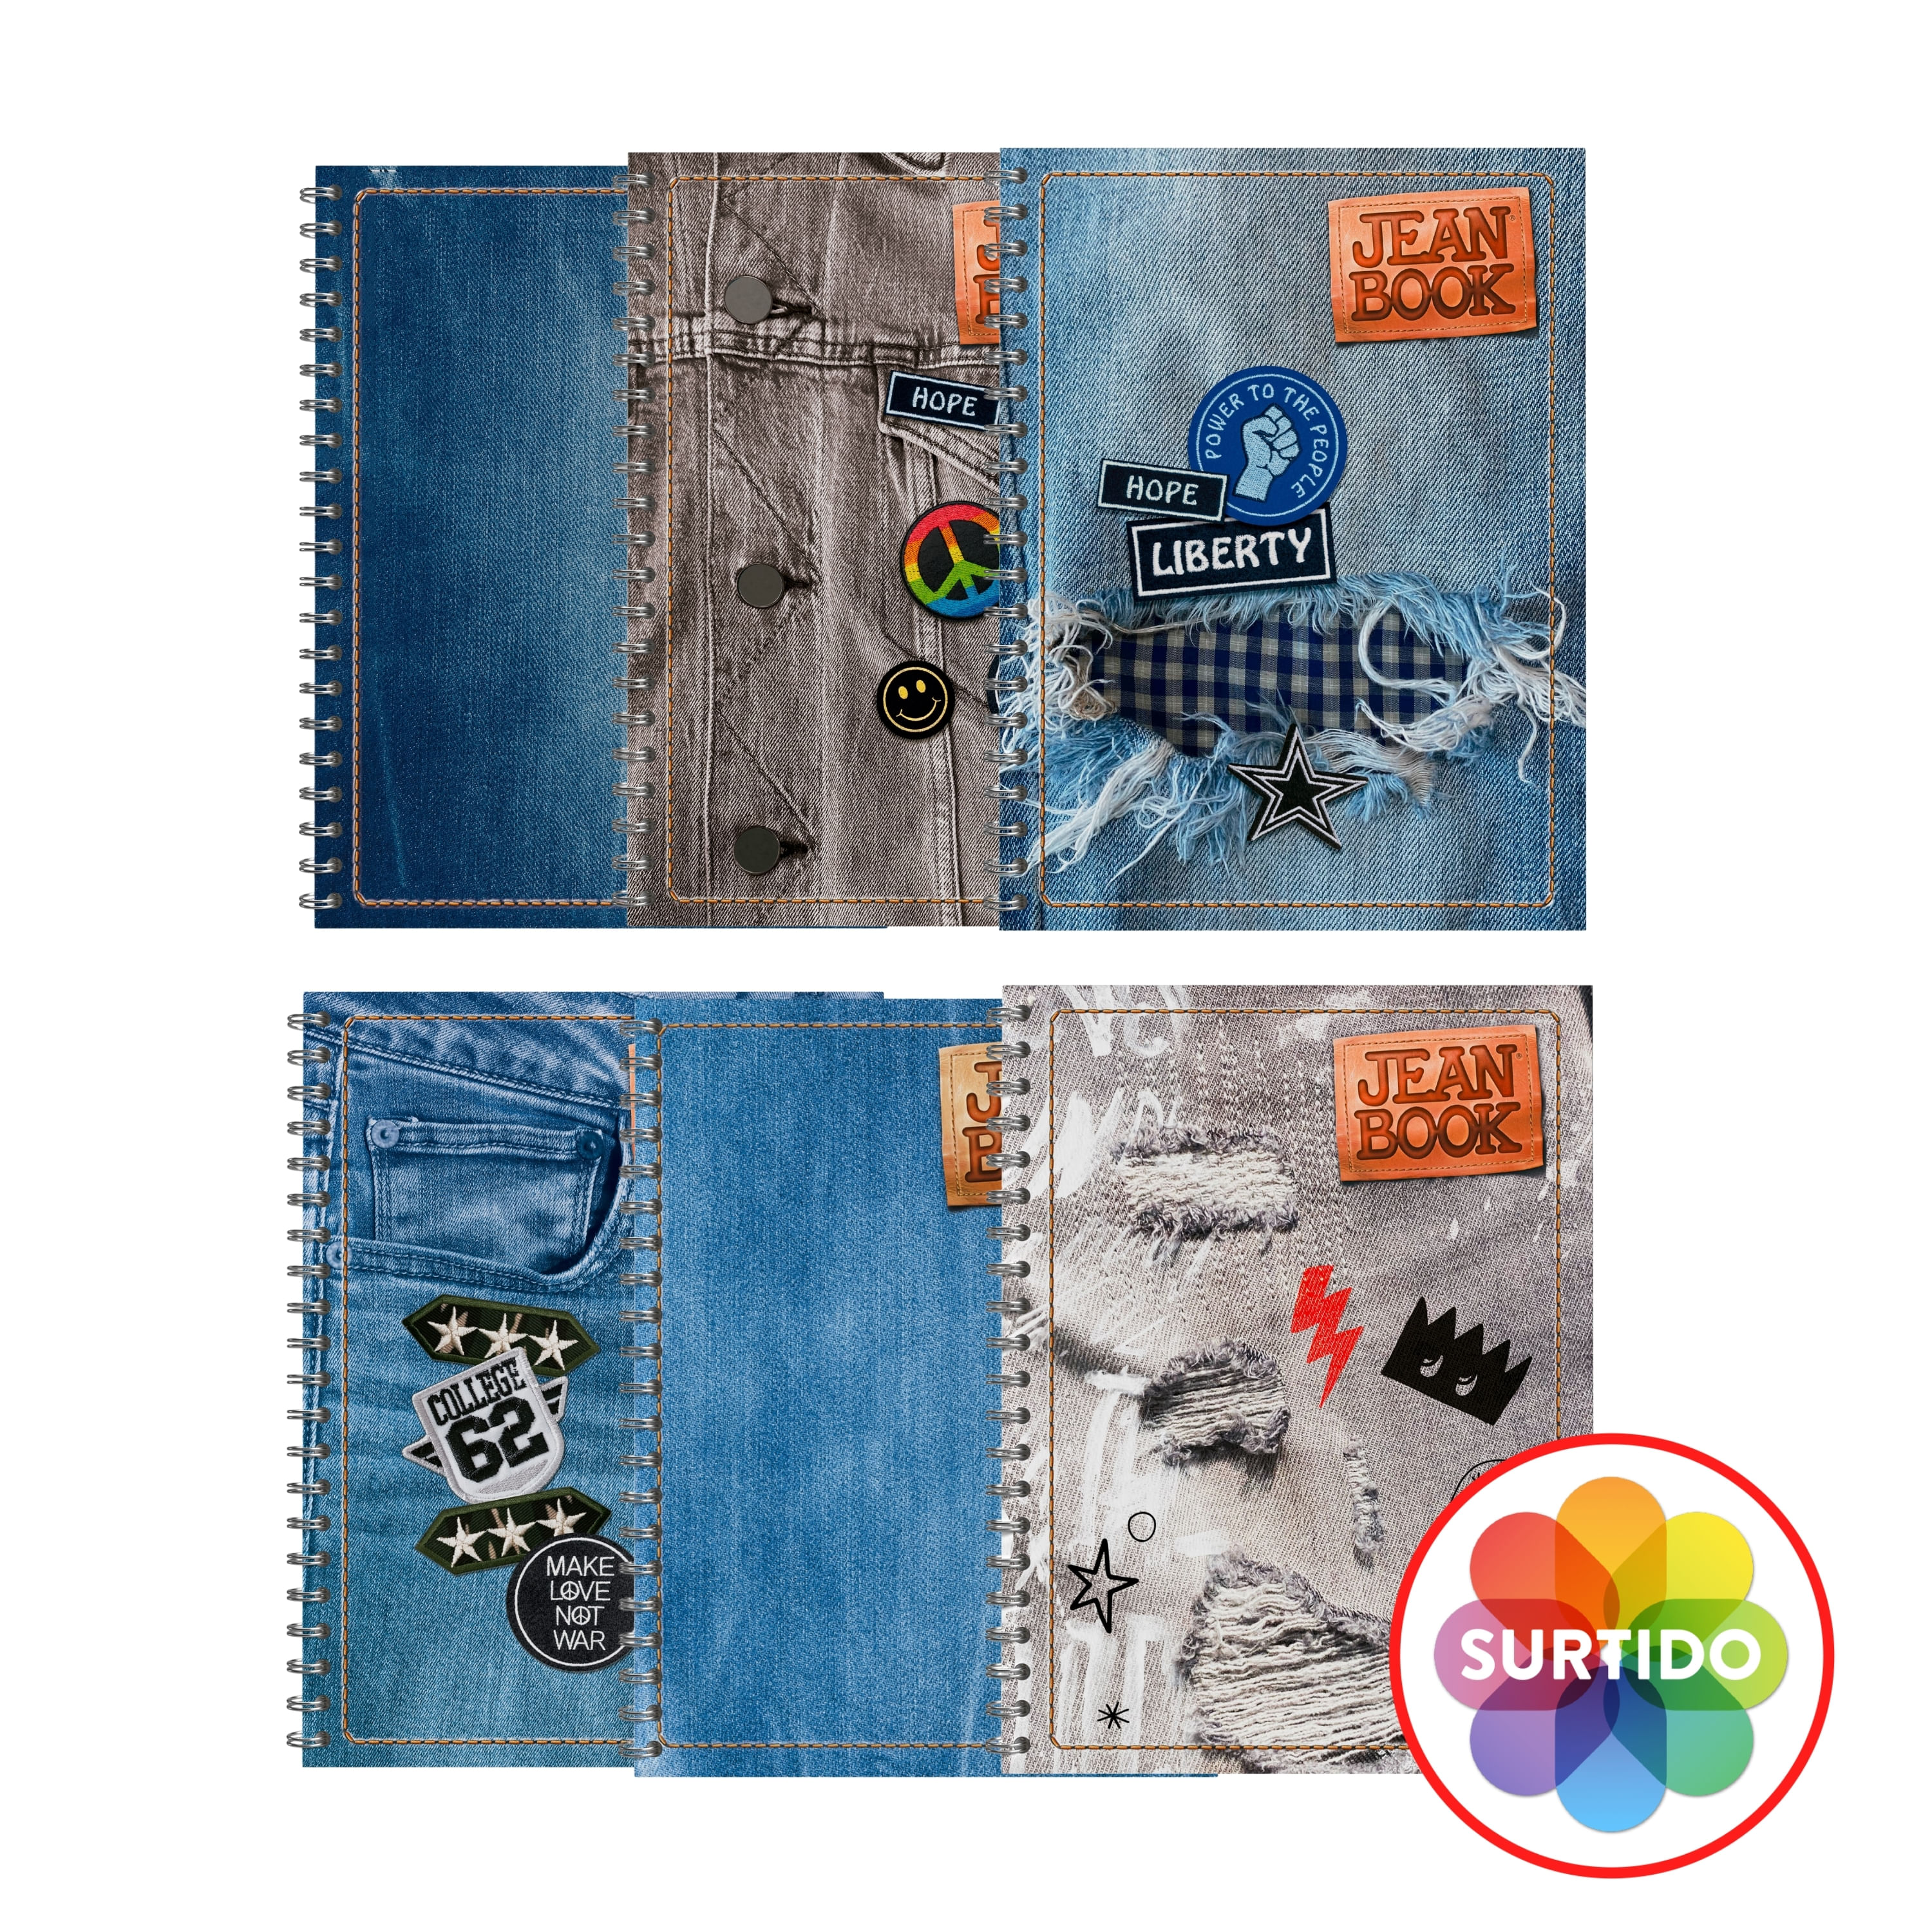 Cuaderno-Norma-Jean-Book-Doble-Raya-5M-160-Hojas-1-18550